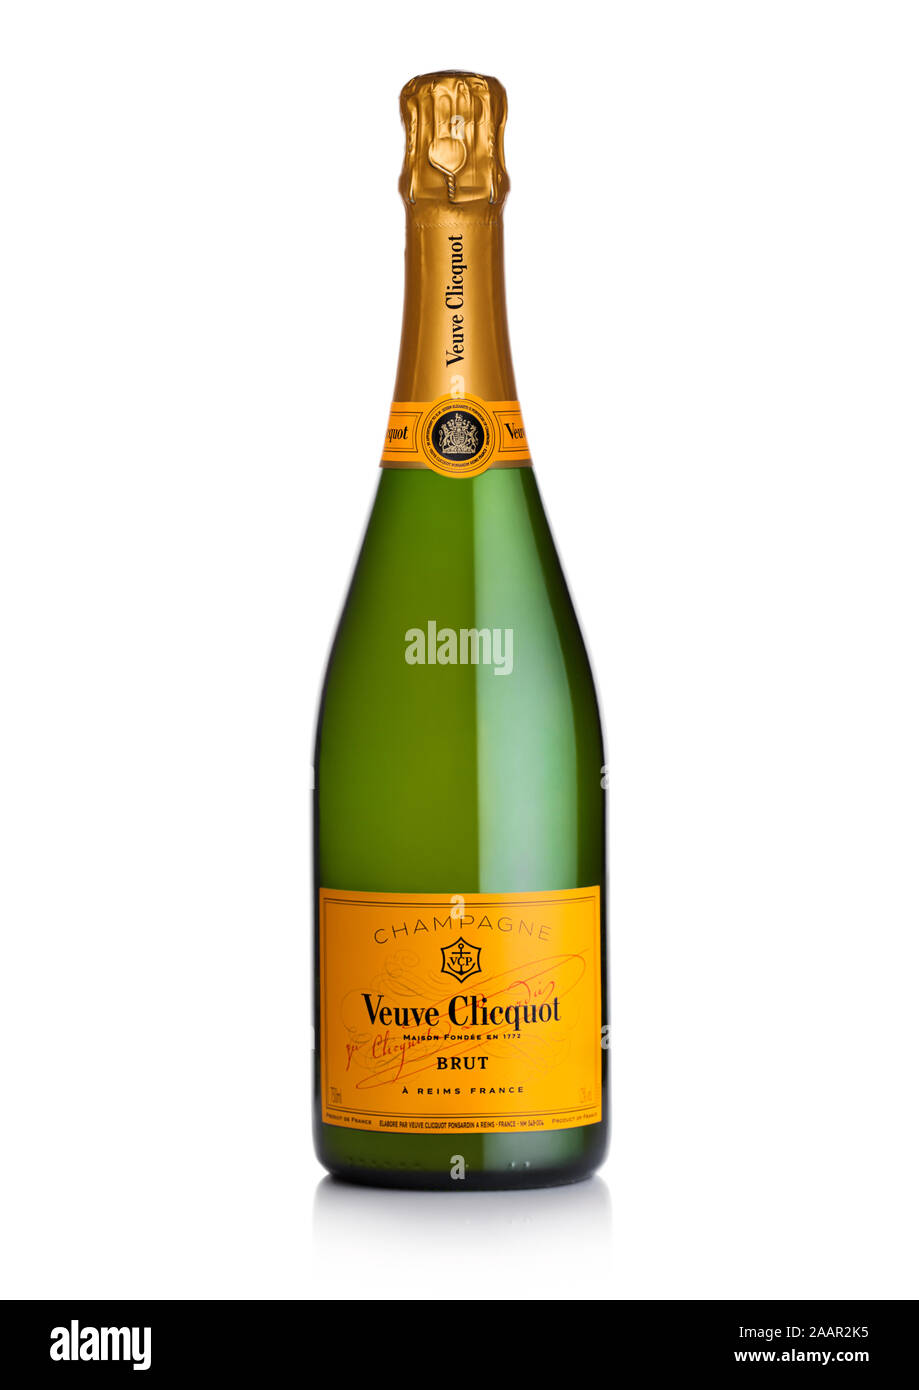 Londres, Royaume-Uni - 20 NOVEMBRE 2019 : Bouteille de Veuve Clicquot Brut champagne de luxe de renommée mondiale sur le blanc. Banque D'Images